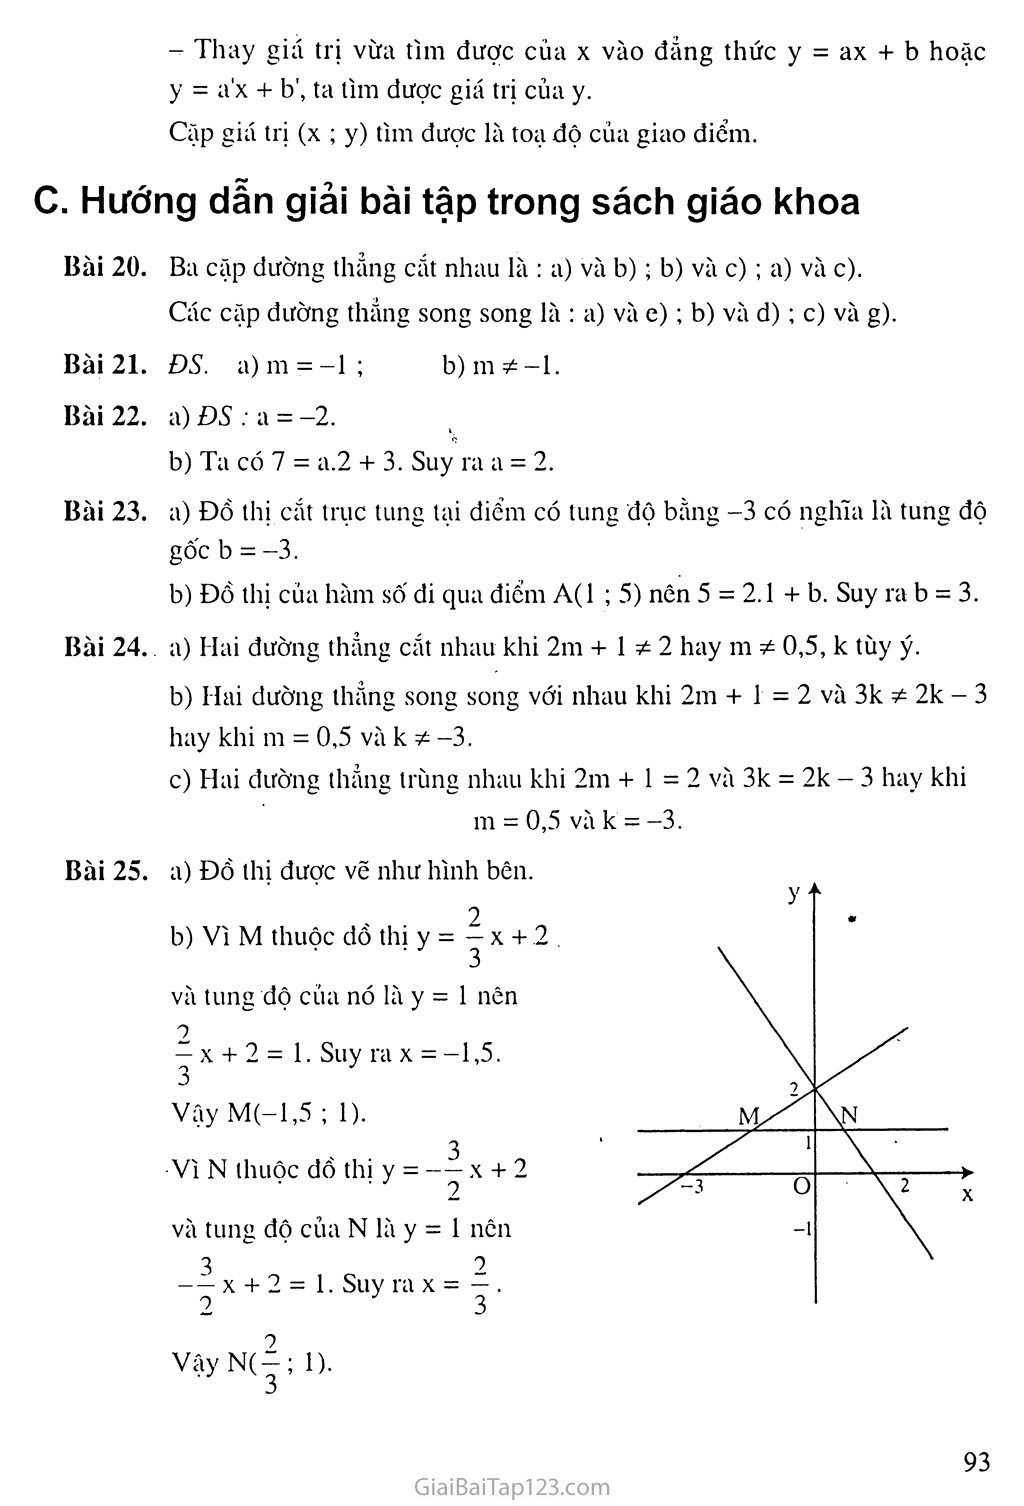 Bài 4. Đường thẳng song song và đường thảng cắt nhau trang 3